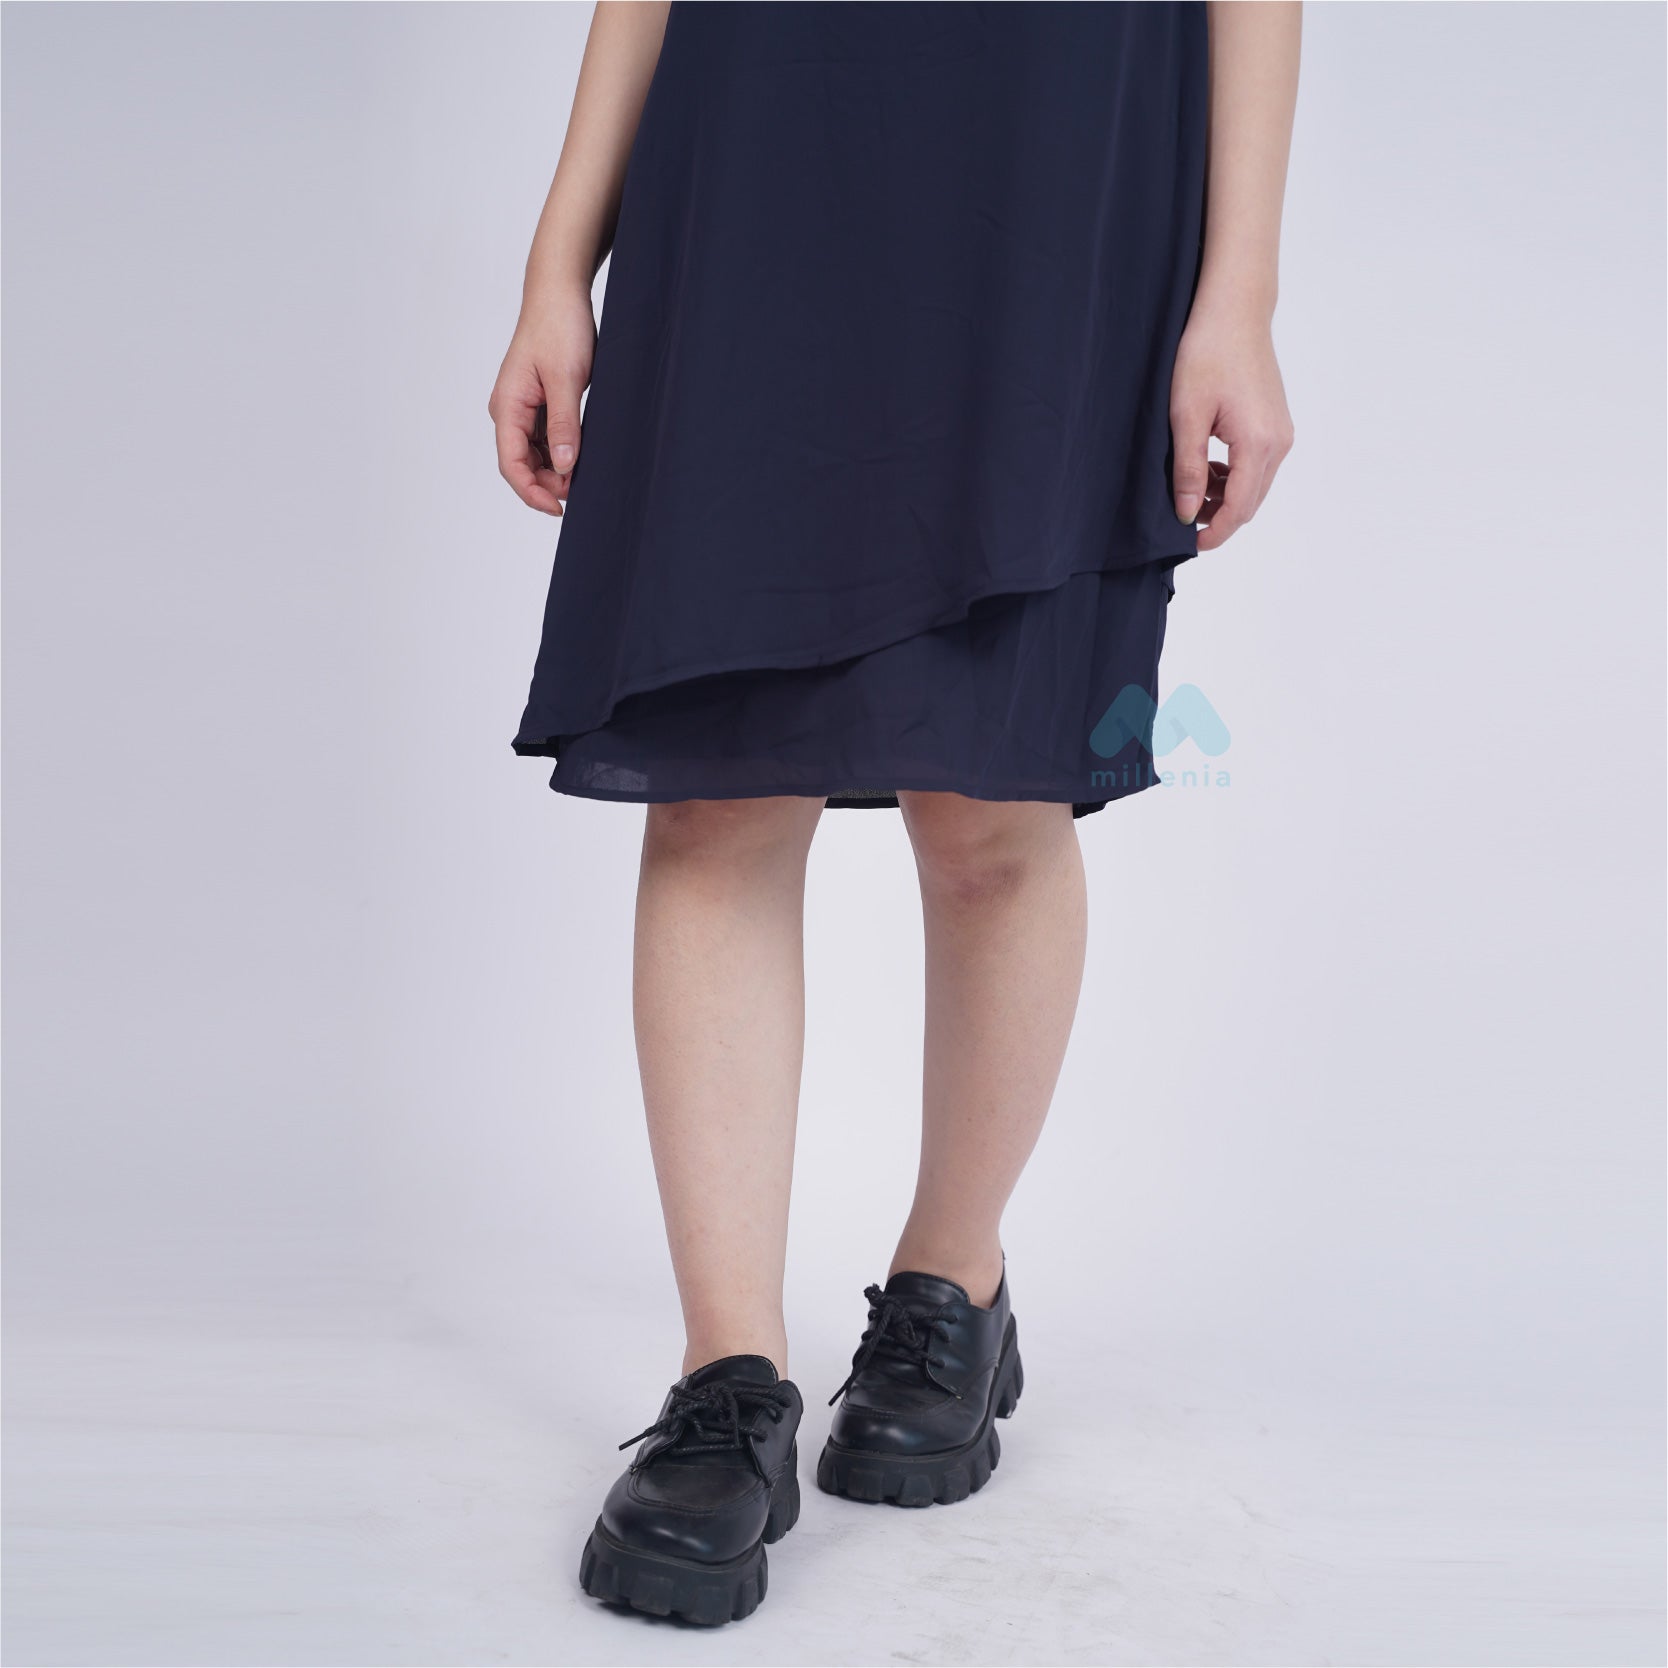 Dress Wanita Casual sleeveless Motif Polos [CG-EDCD 08]